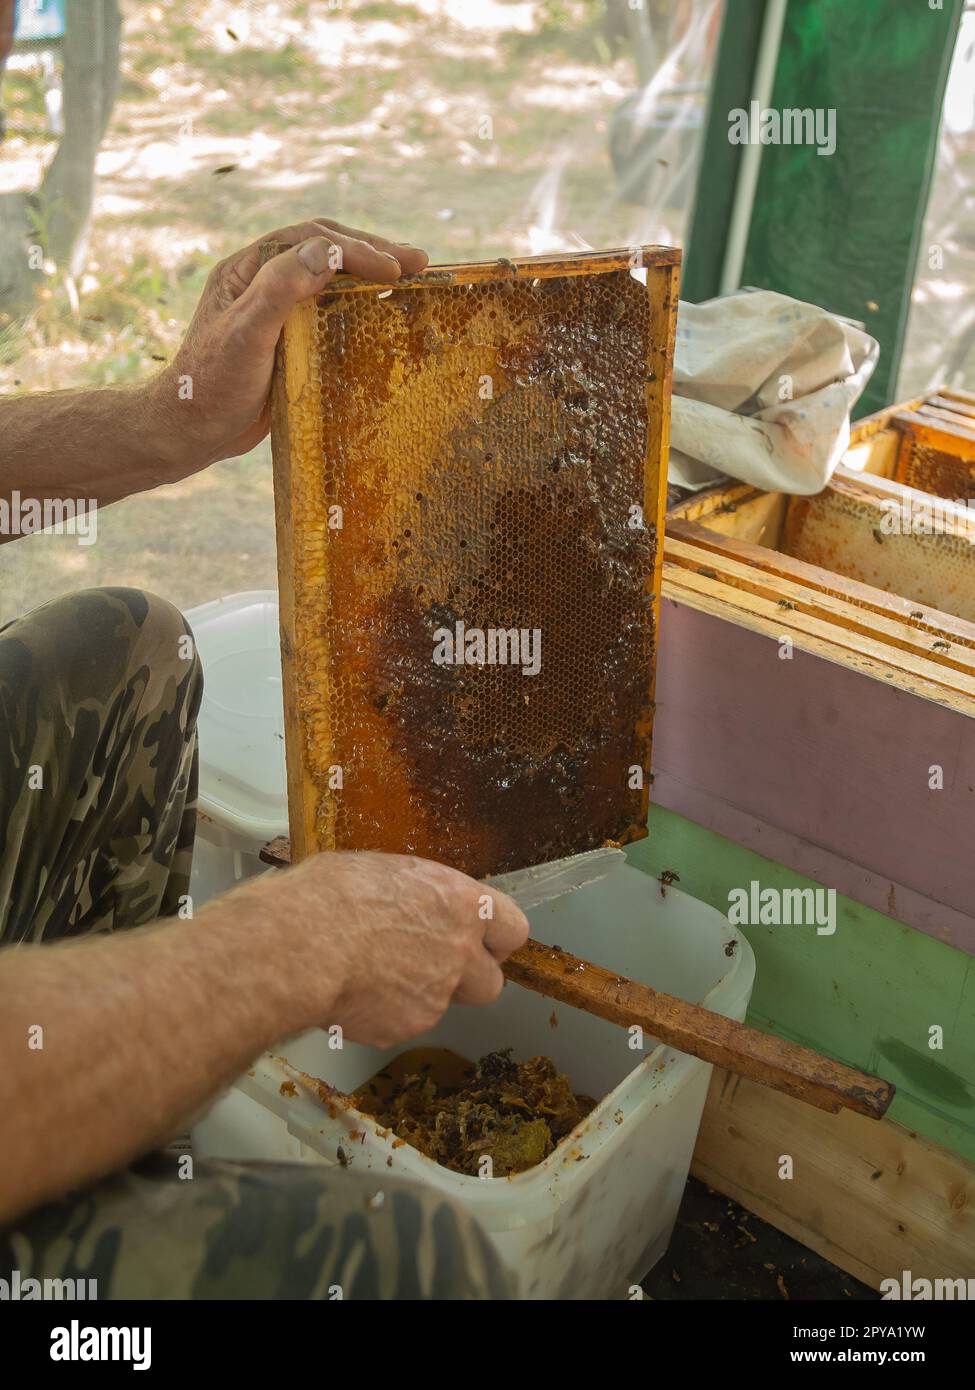 Extraktion von Honig aus Wabenkonzept. Nahaufnahme des Imkers, der Wachsdeckel mit heißem Messer aus der Wabe zur Honiggewinnung schneidet. Stockfoto